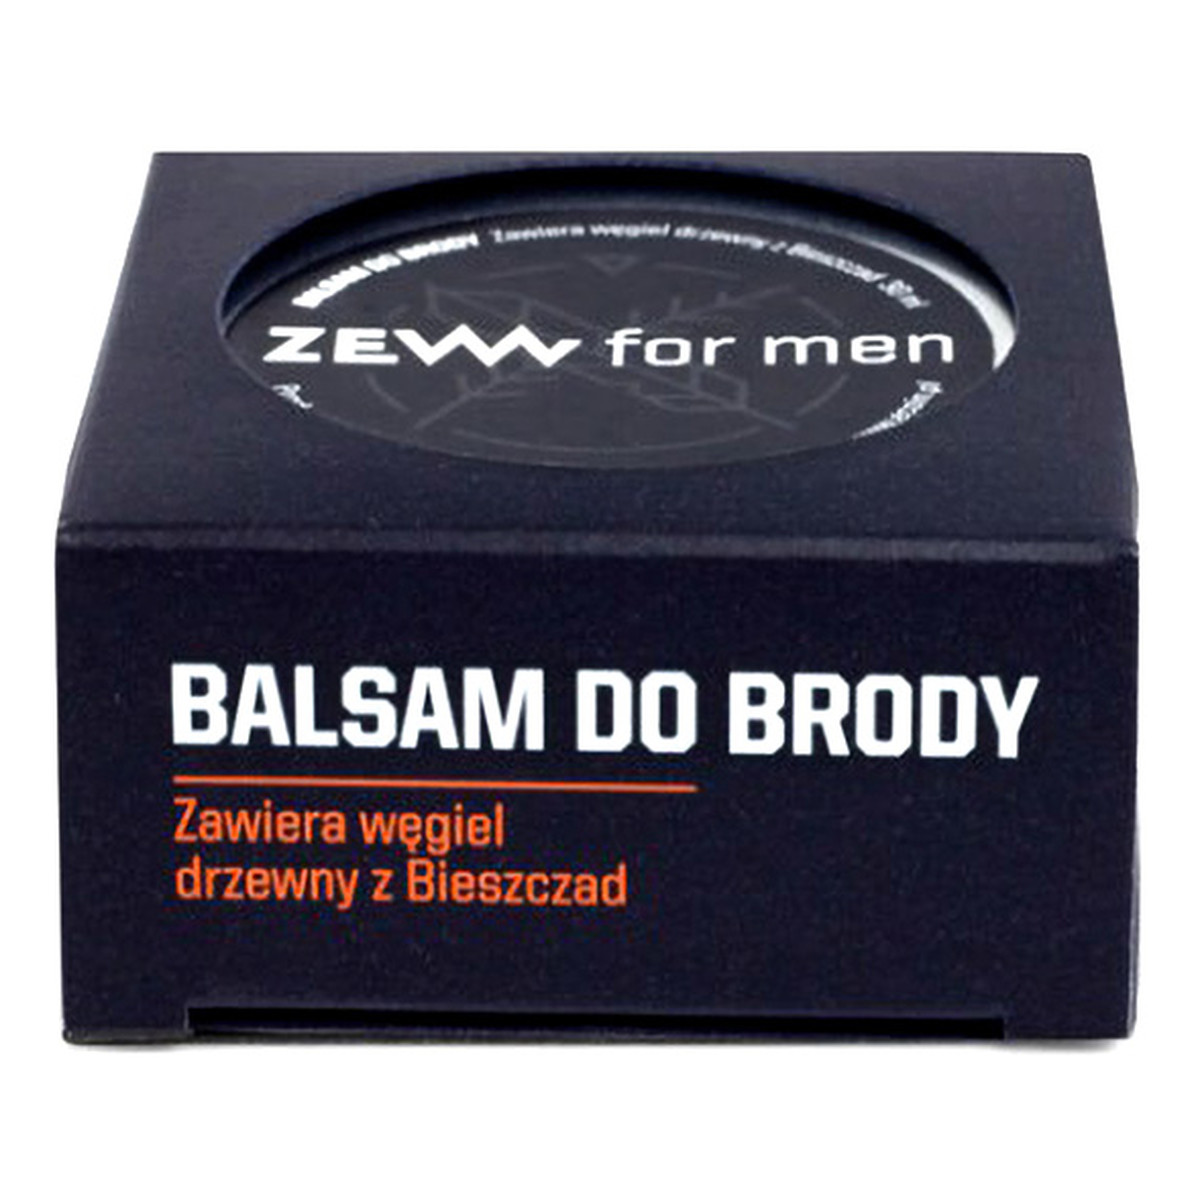 Zew For Men Balsam do brody zawiera węgiel drzewny z Bieszczad 30ml